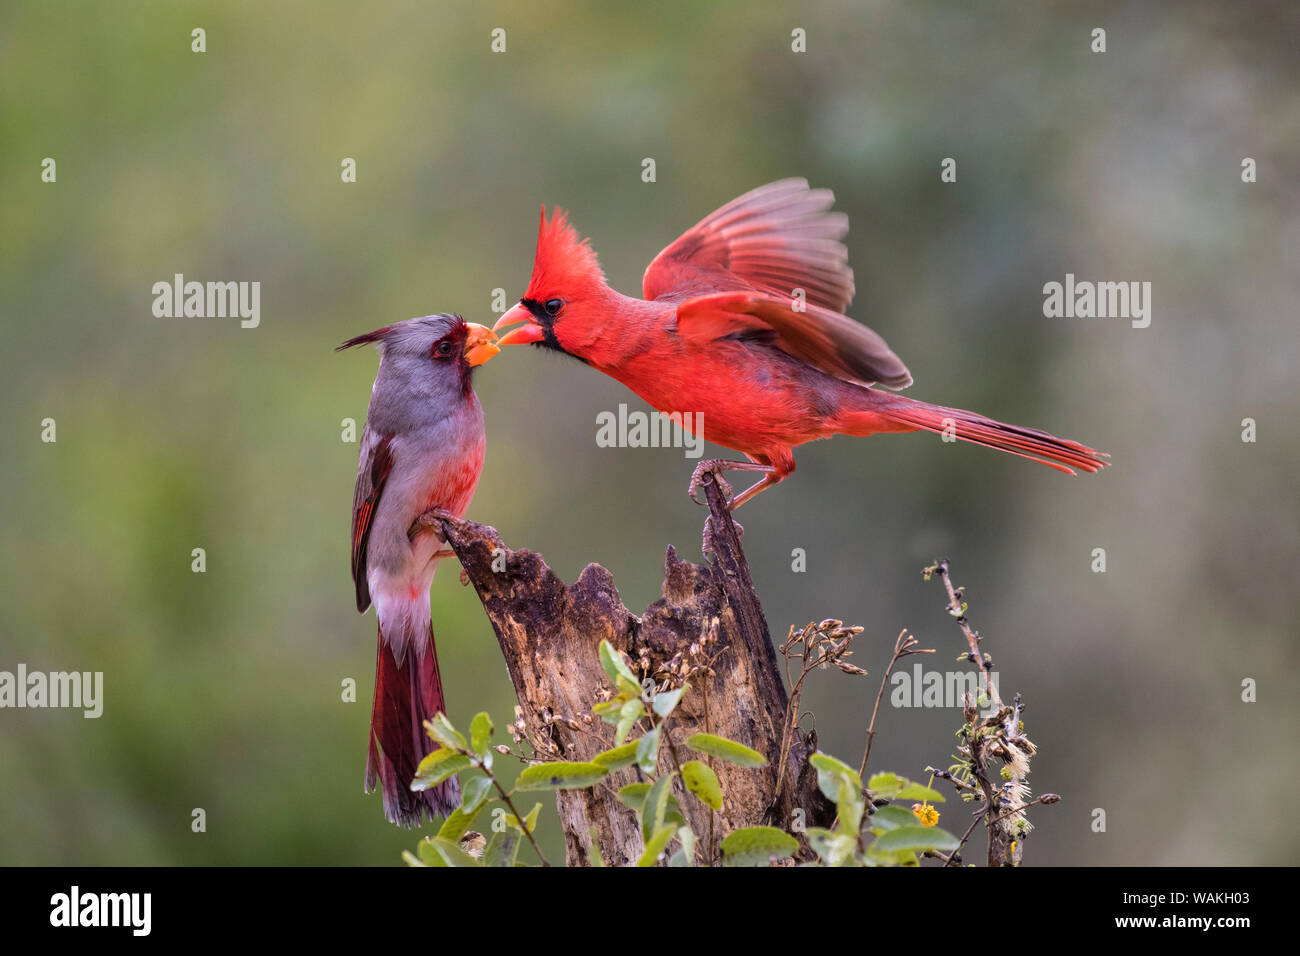 Northern cardinal (Cardinalis cardinalis) and Pyrrhuloxia (Cardinalis sinuatus) males fighting for a perch. Stock Photo